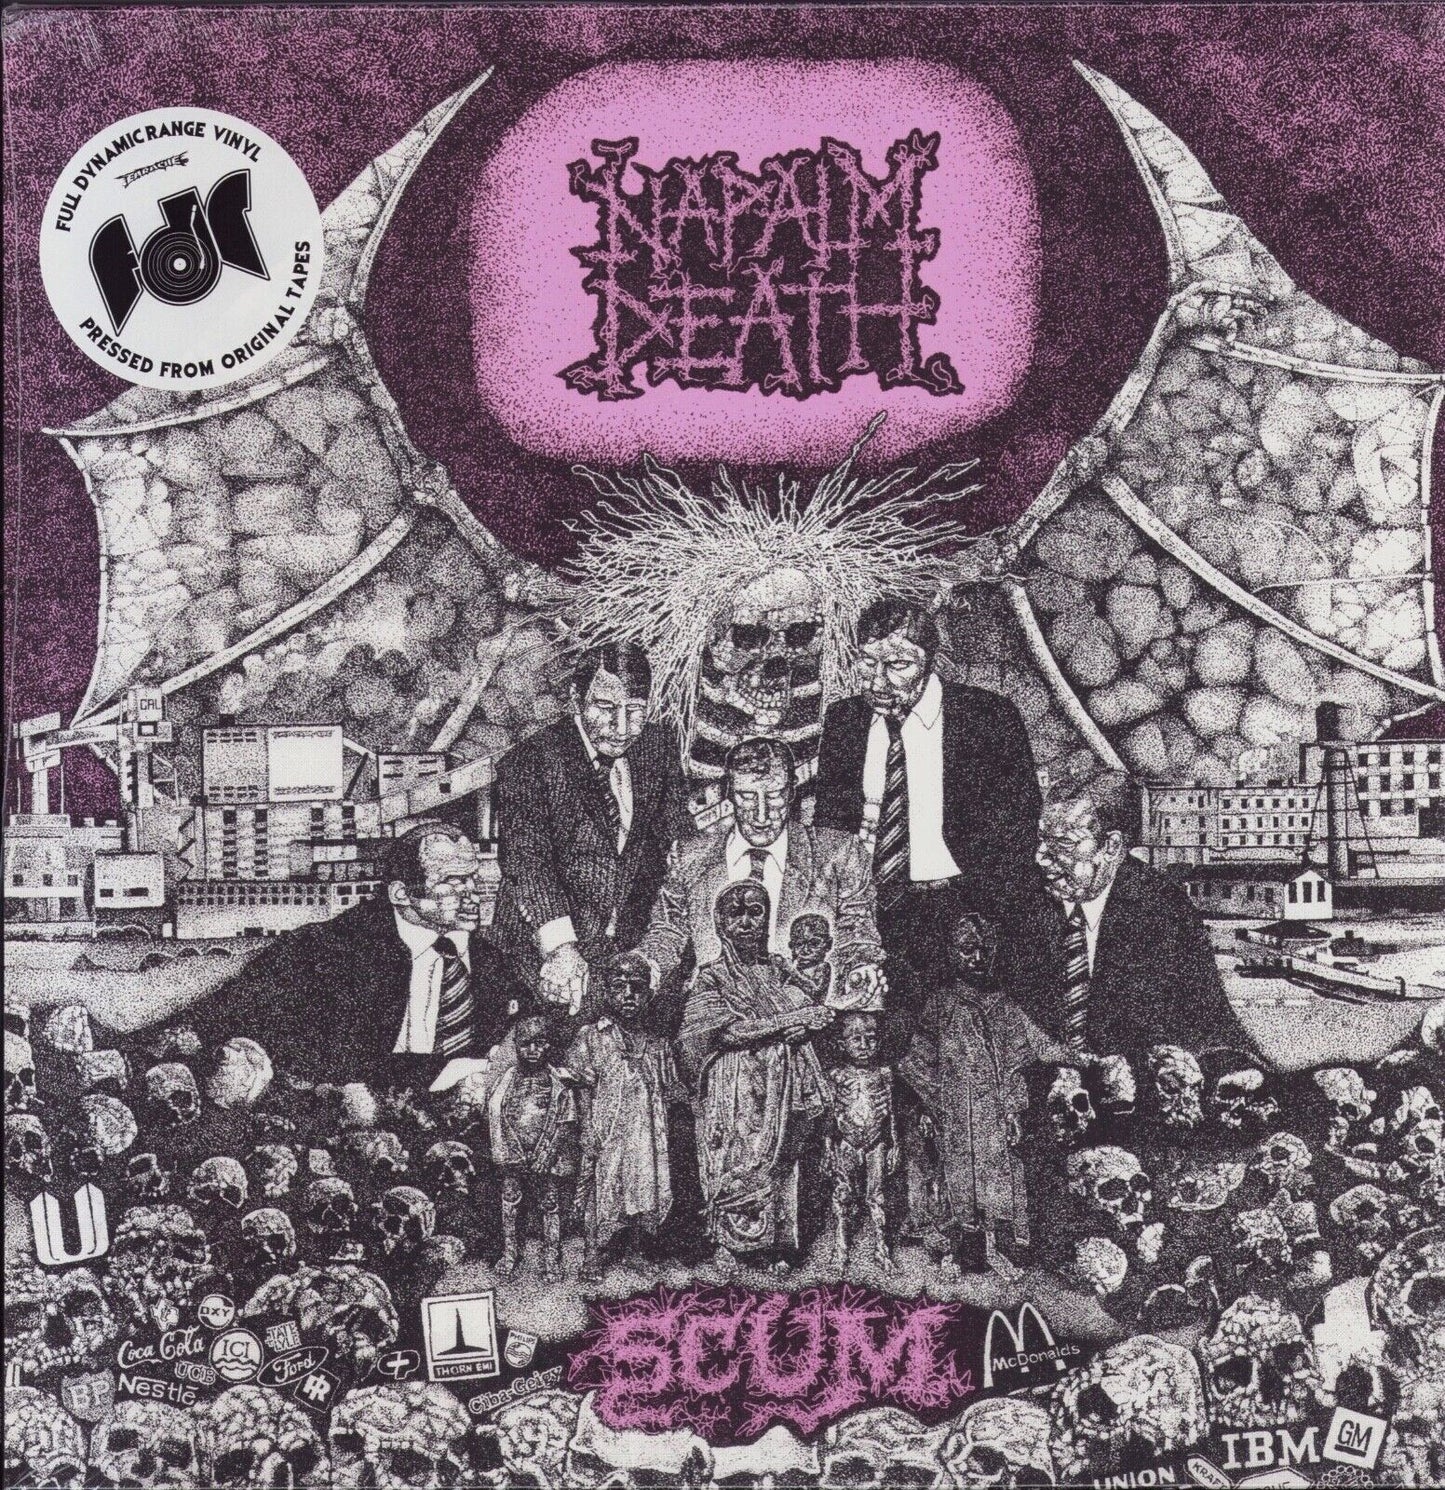 Napalm Death ‎- Scum Vinyl LP Limited Edition